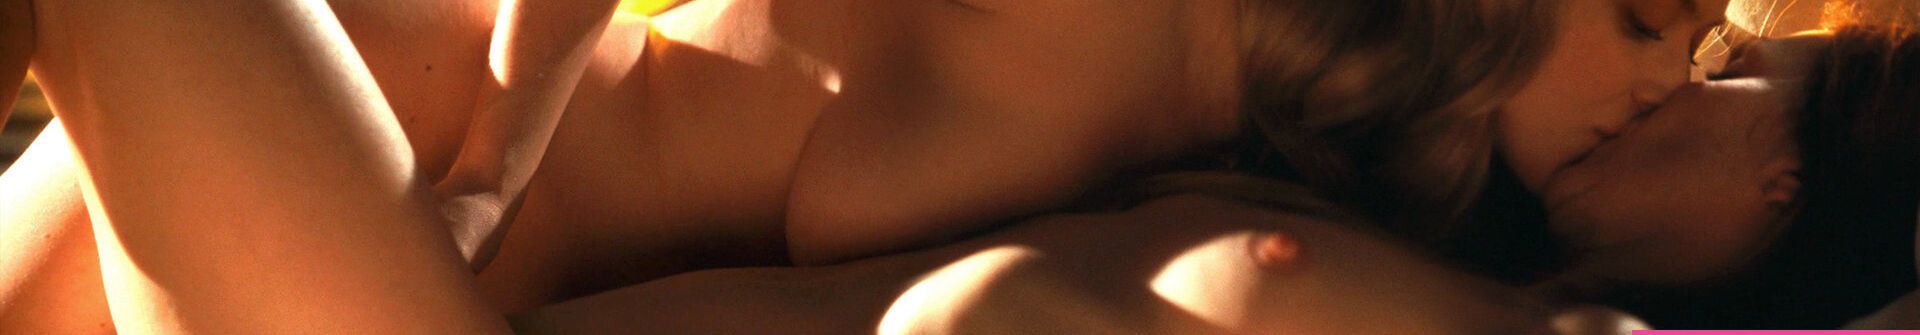 Amanda Seyfried nuda #108036501